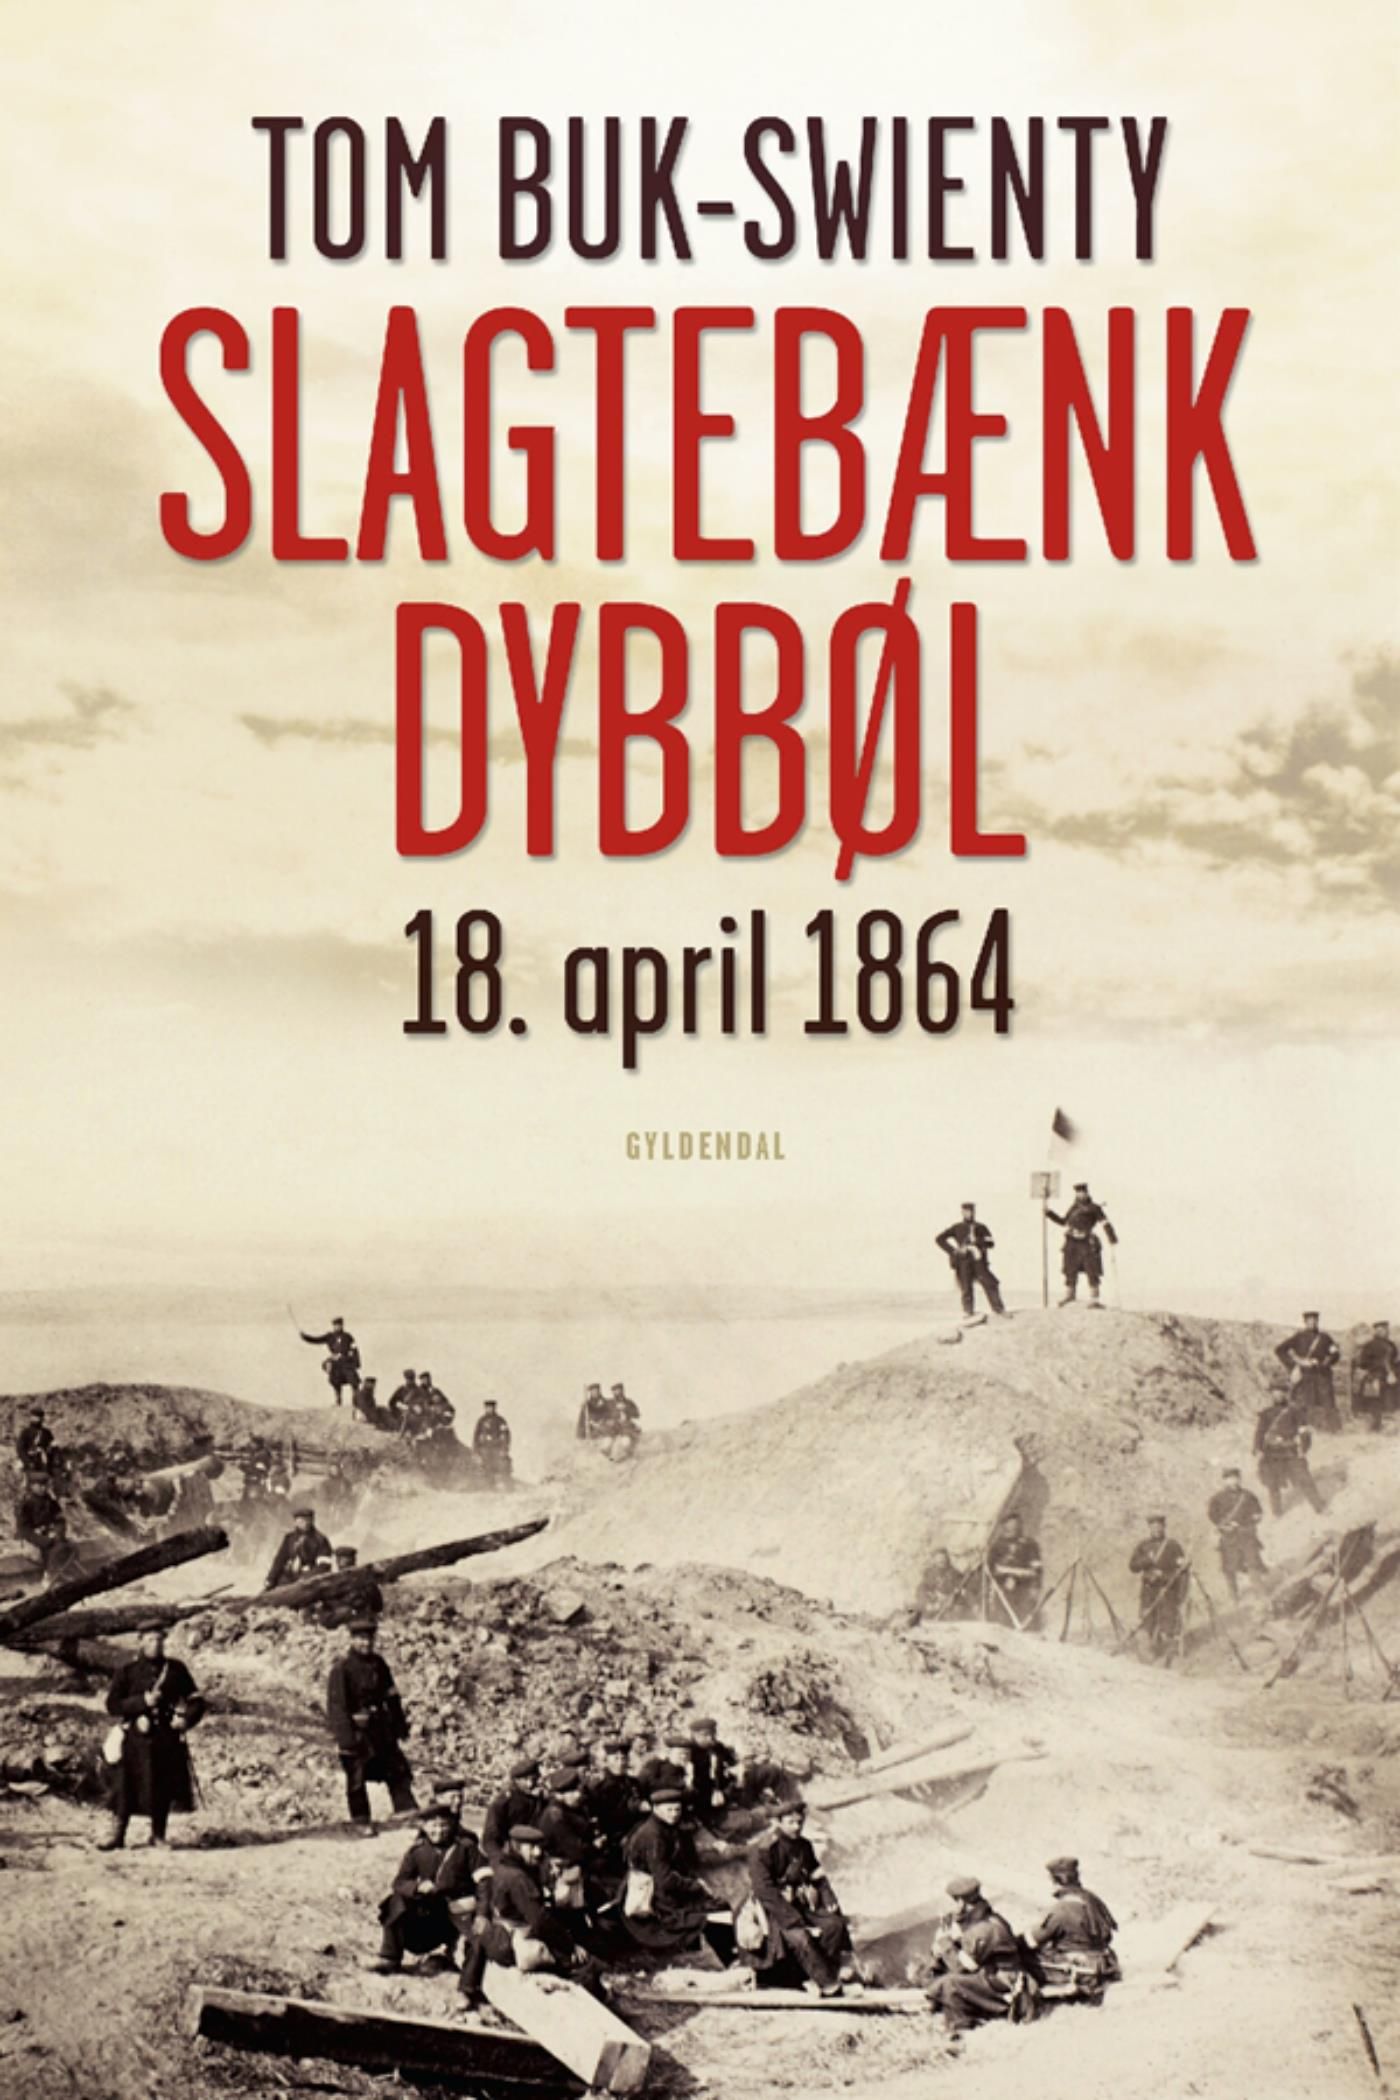 Slagtebænk Dybbøl, eBook by Tom Buk-Swienty